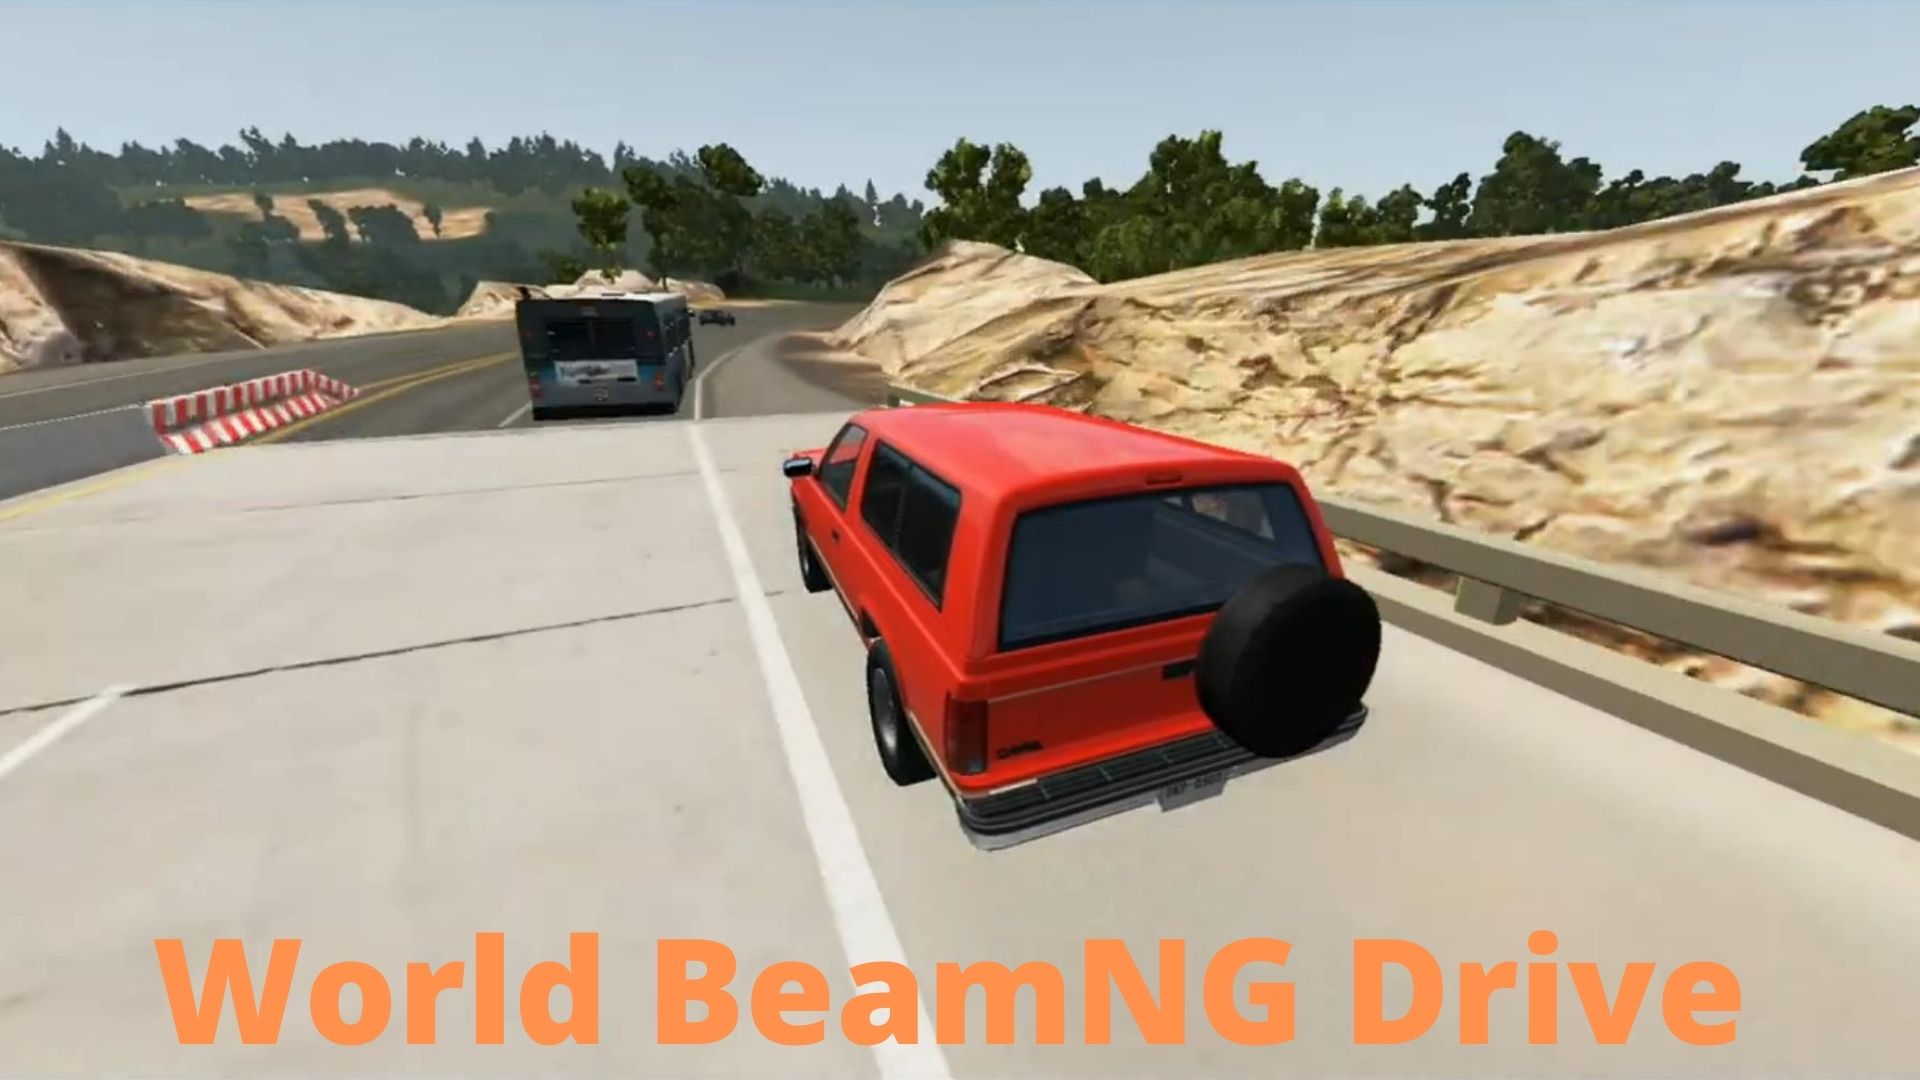 Гонки на скорости  #1 - BeamNG Drive | World BeamNG Drive